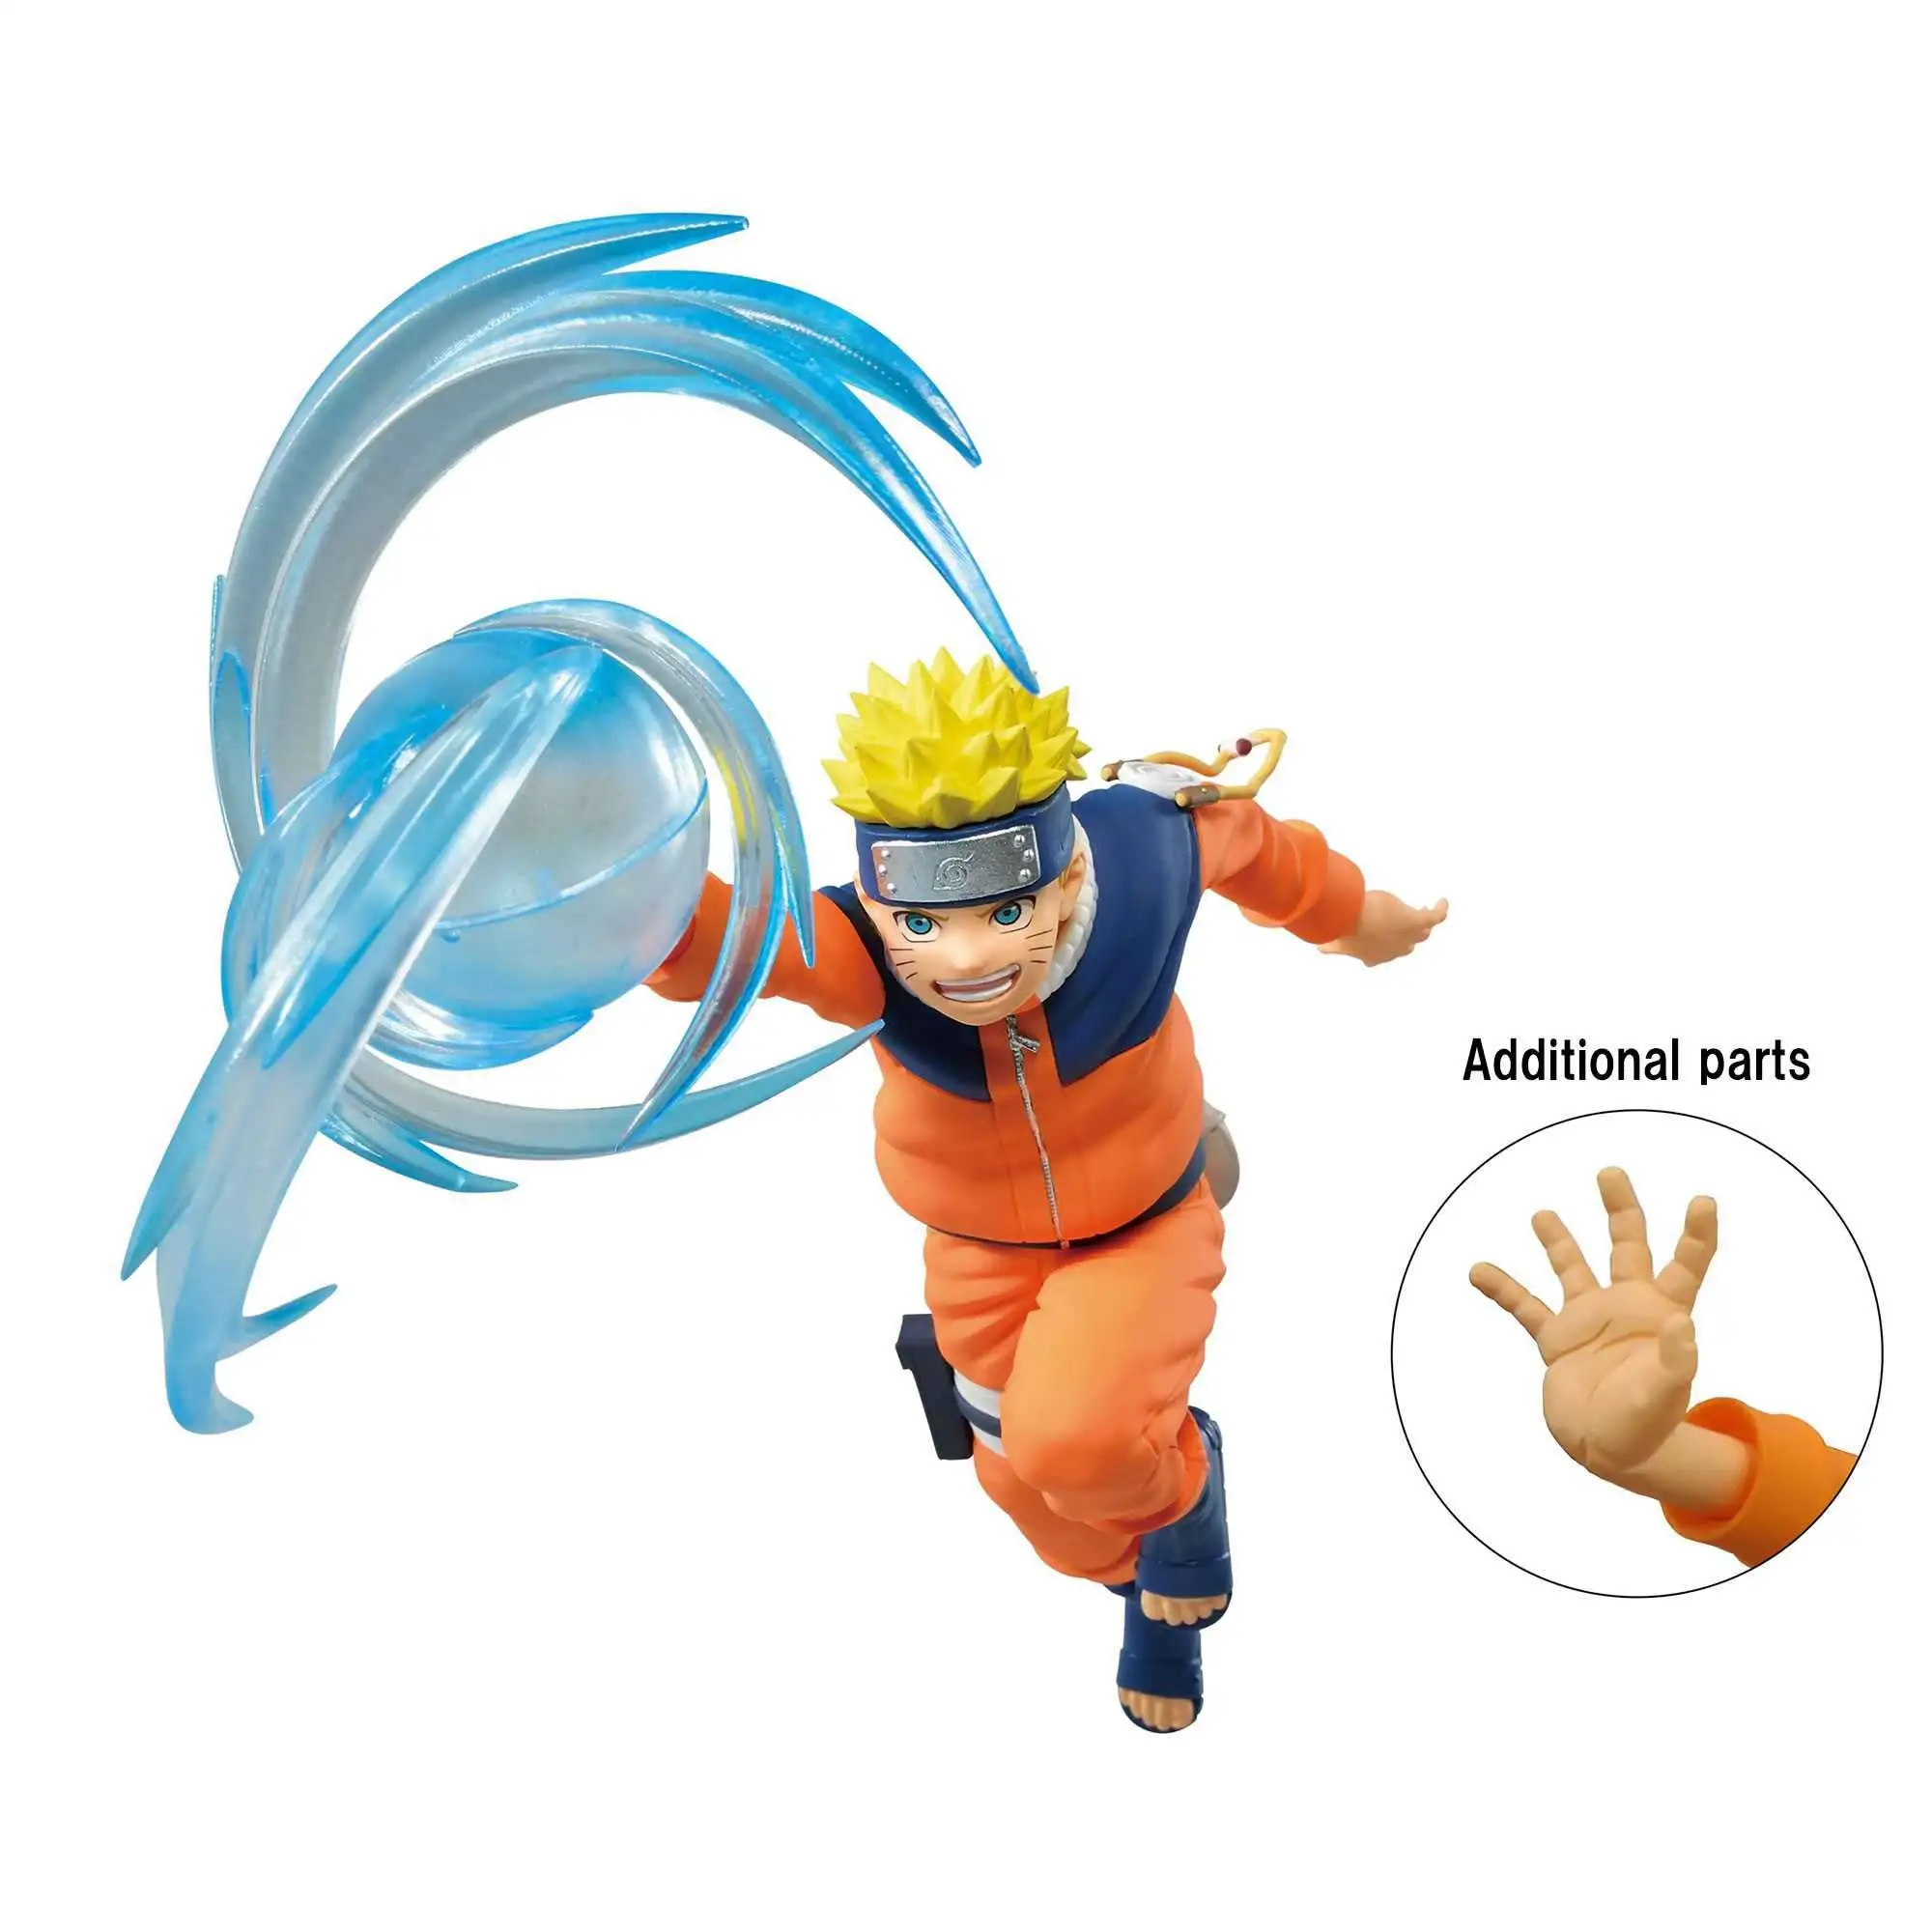 Original Banpresto NARUTO Uzumaki Naruto Top 99 PVC Anime Figure Action  Figures Model Toy - AliExpress